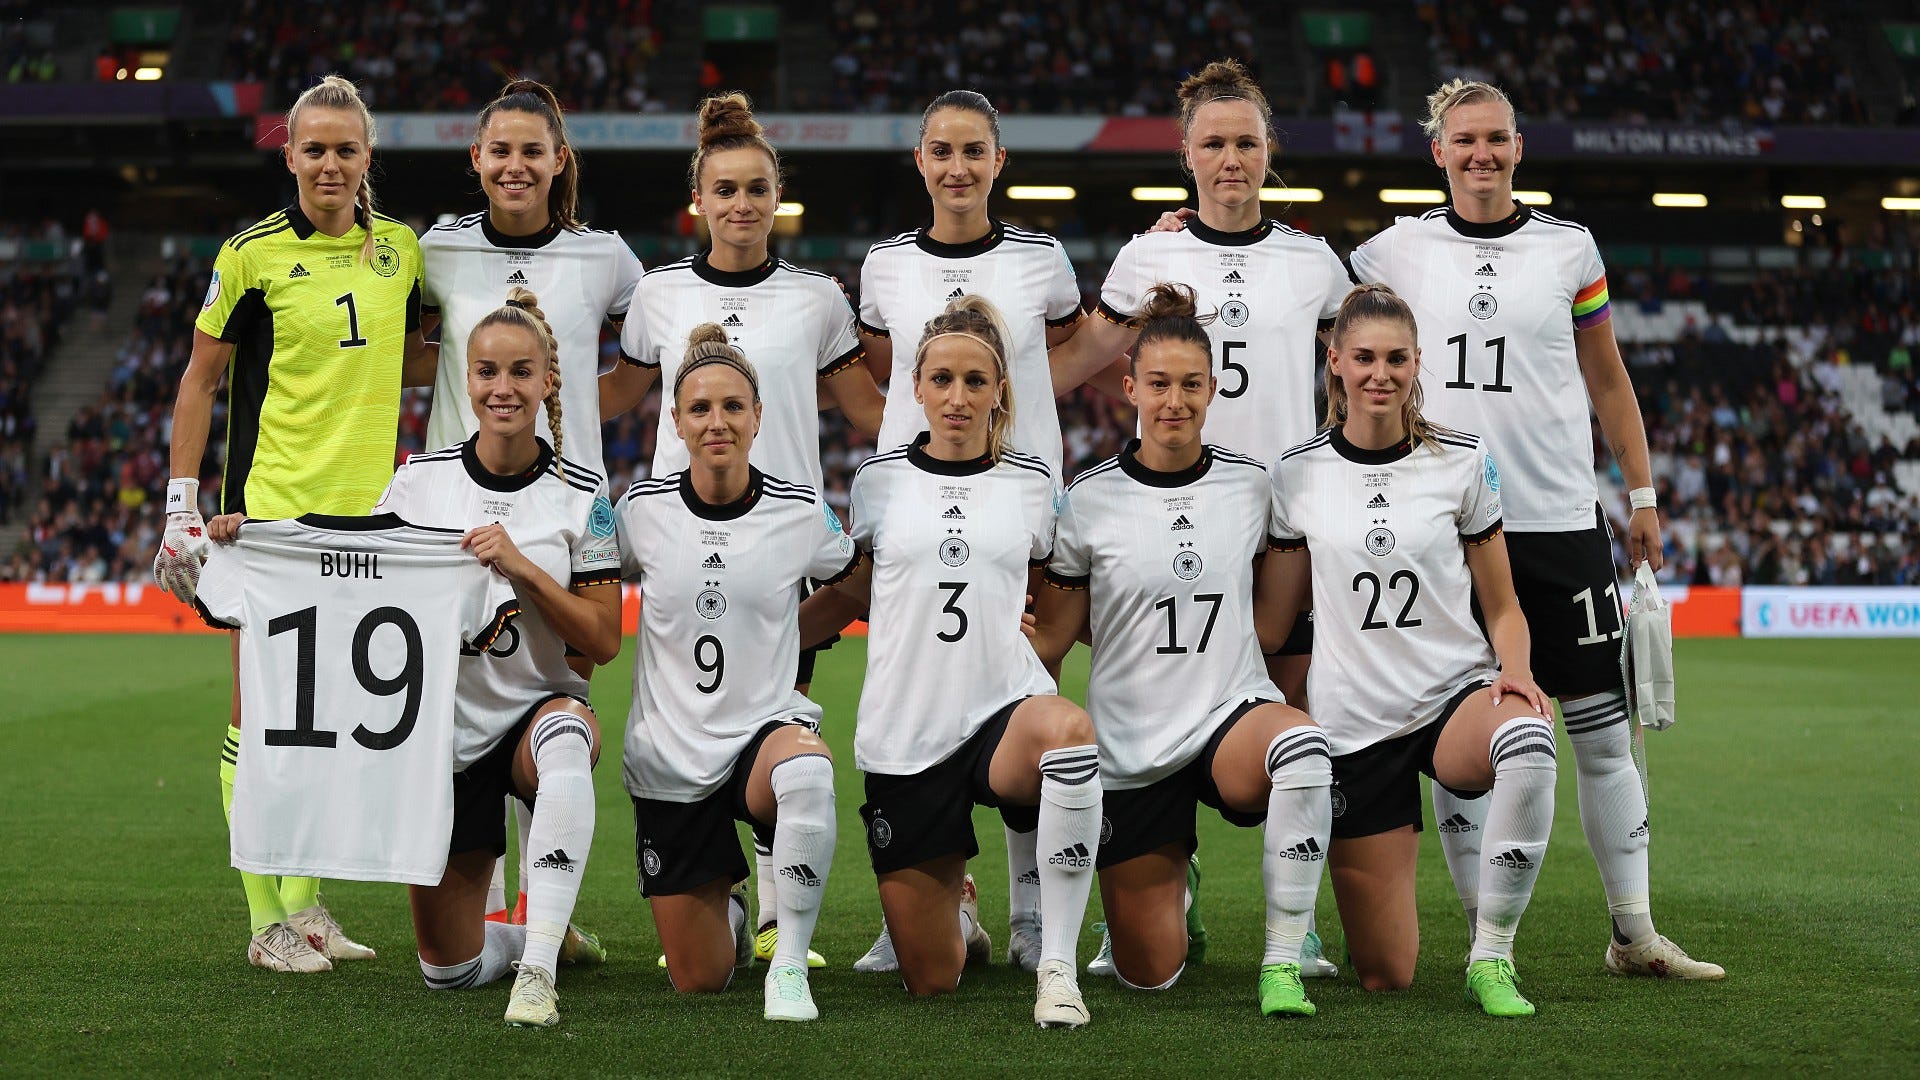 Finale der Frauen-EM 2022 Wo und wann findet das Endspiel heute statt? Alle Infos zu Ort, Stadion und Datum Goal Deutschland